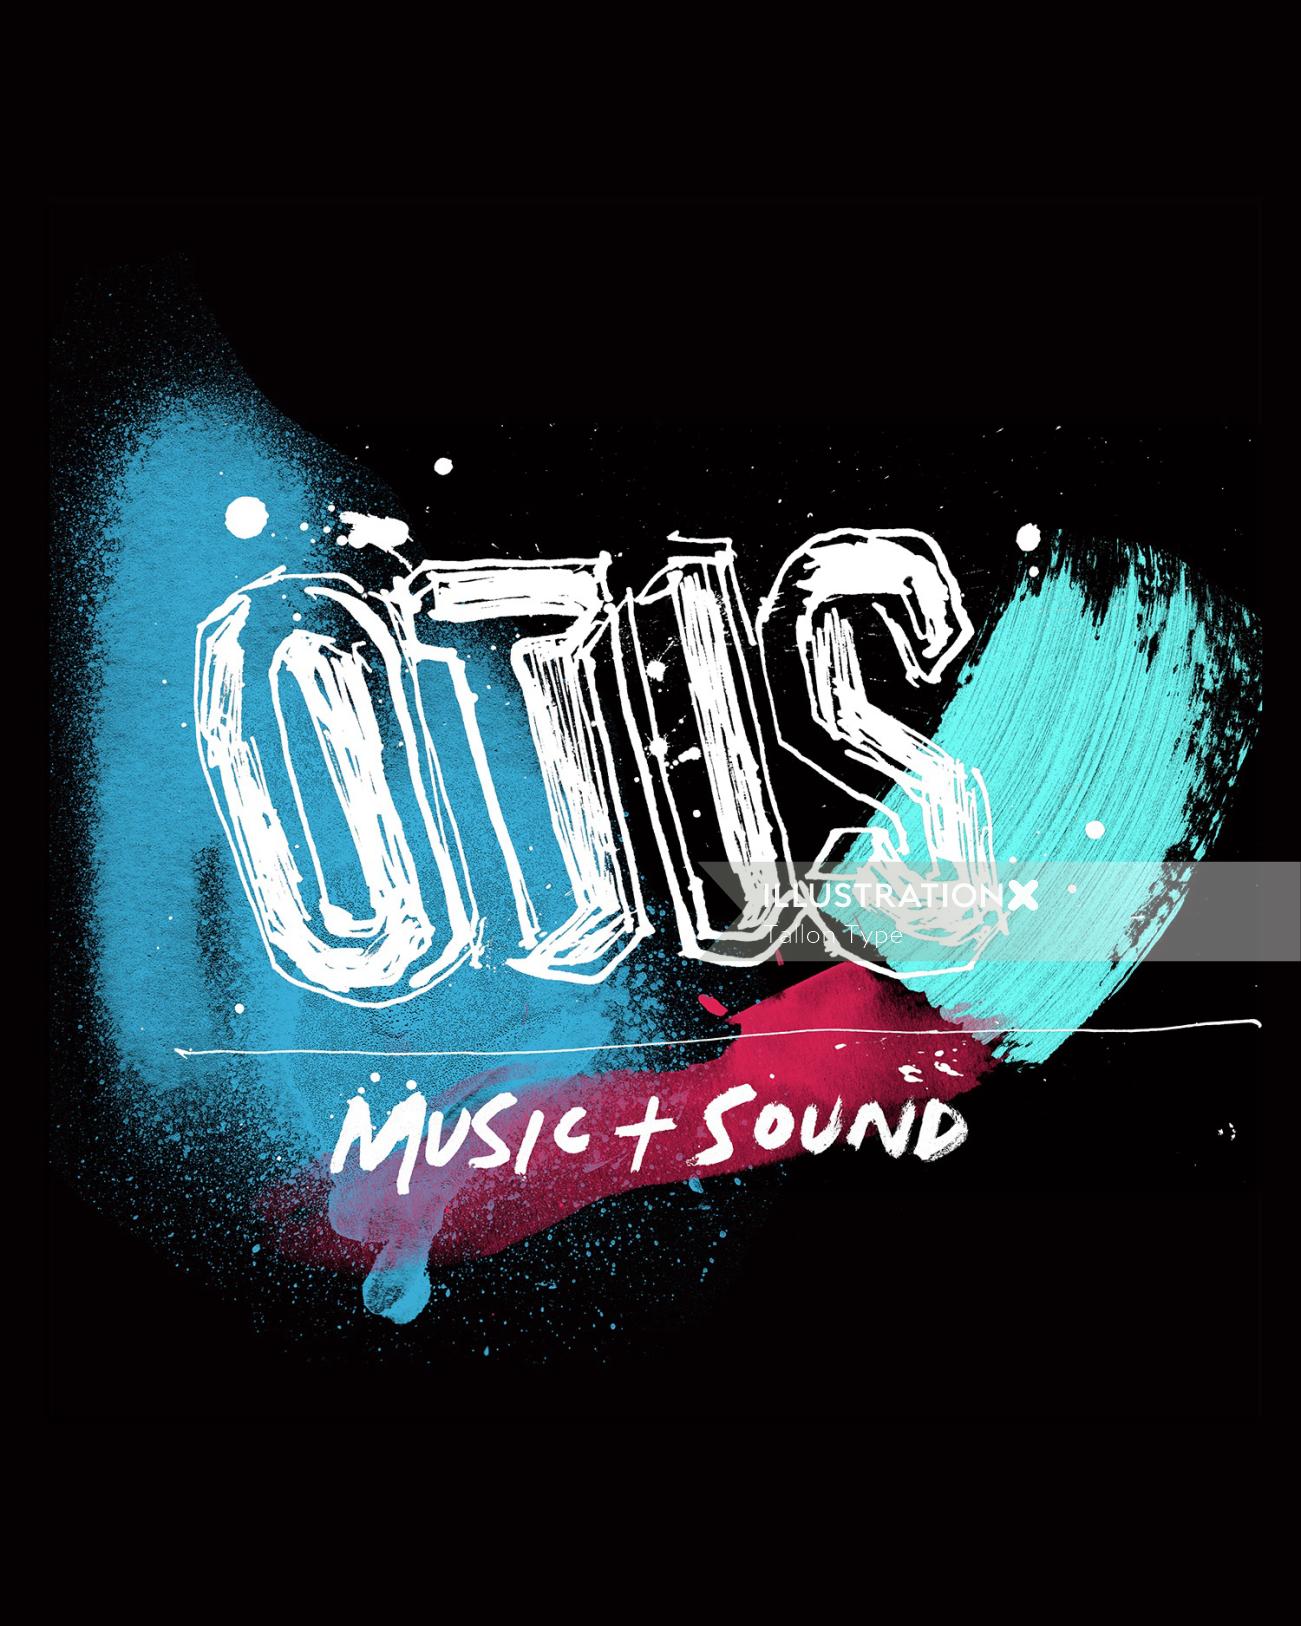 Otis music studio austrália mão letras